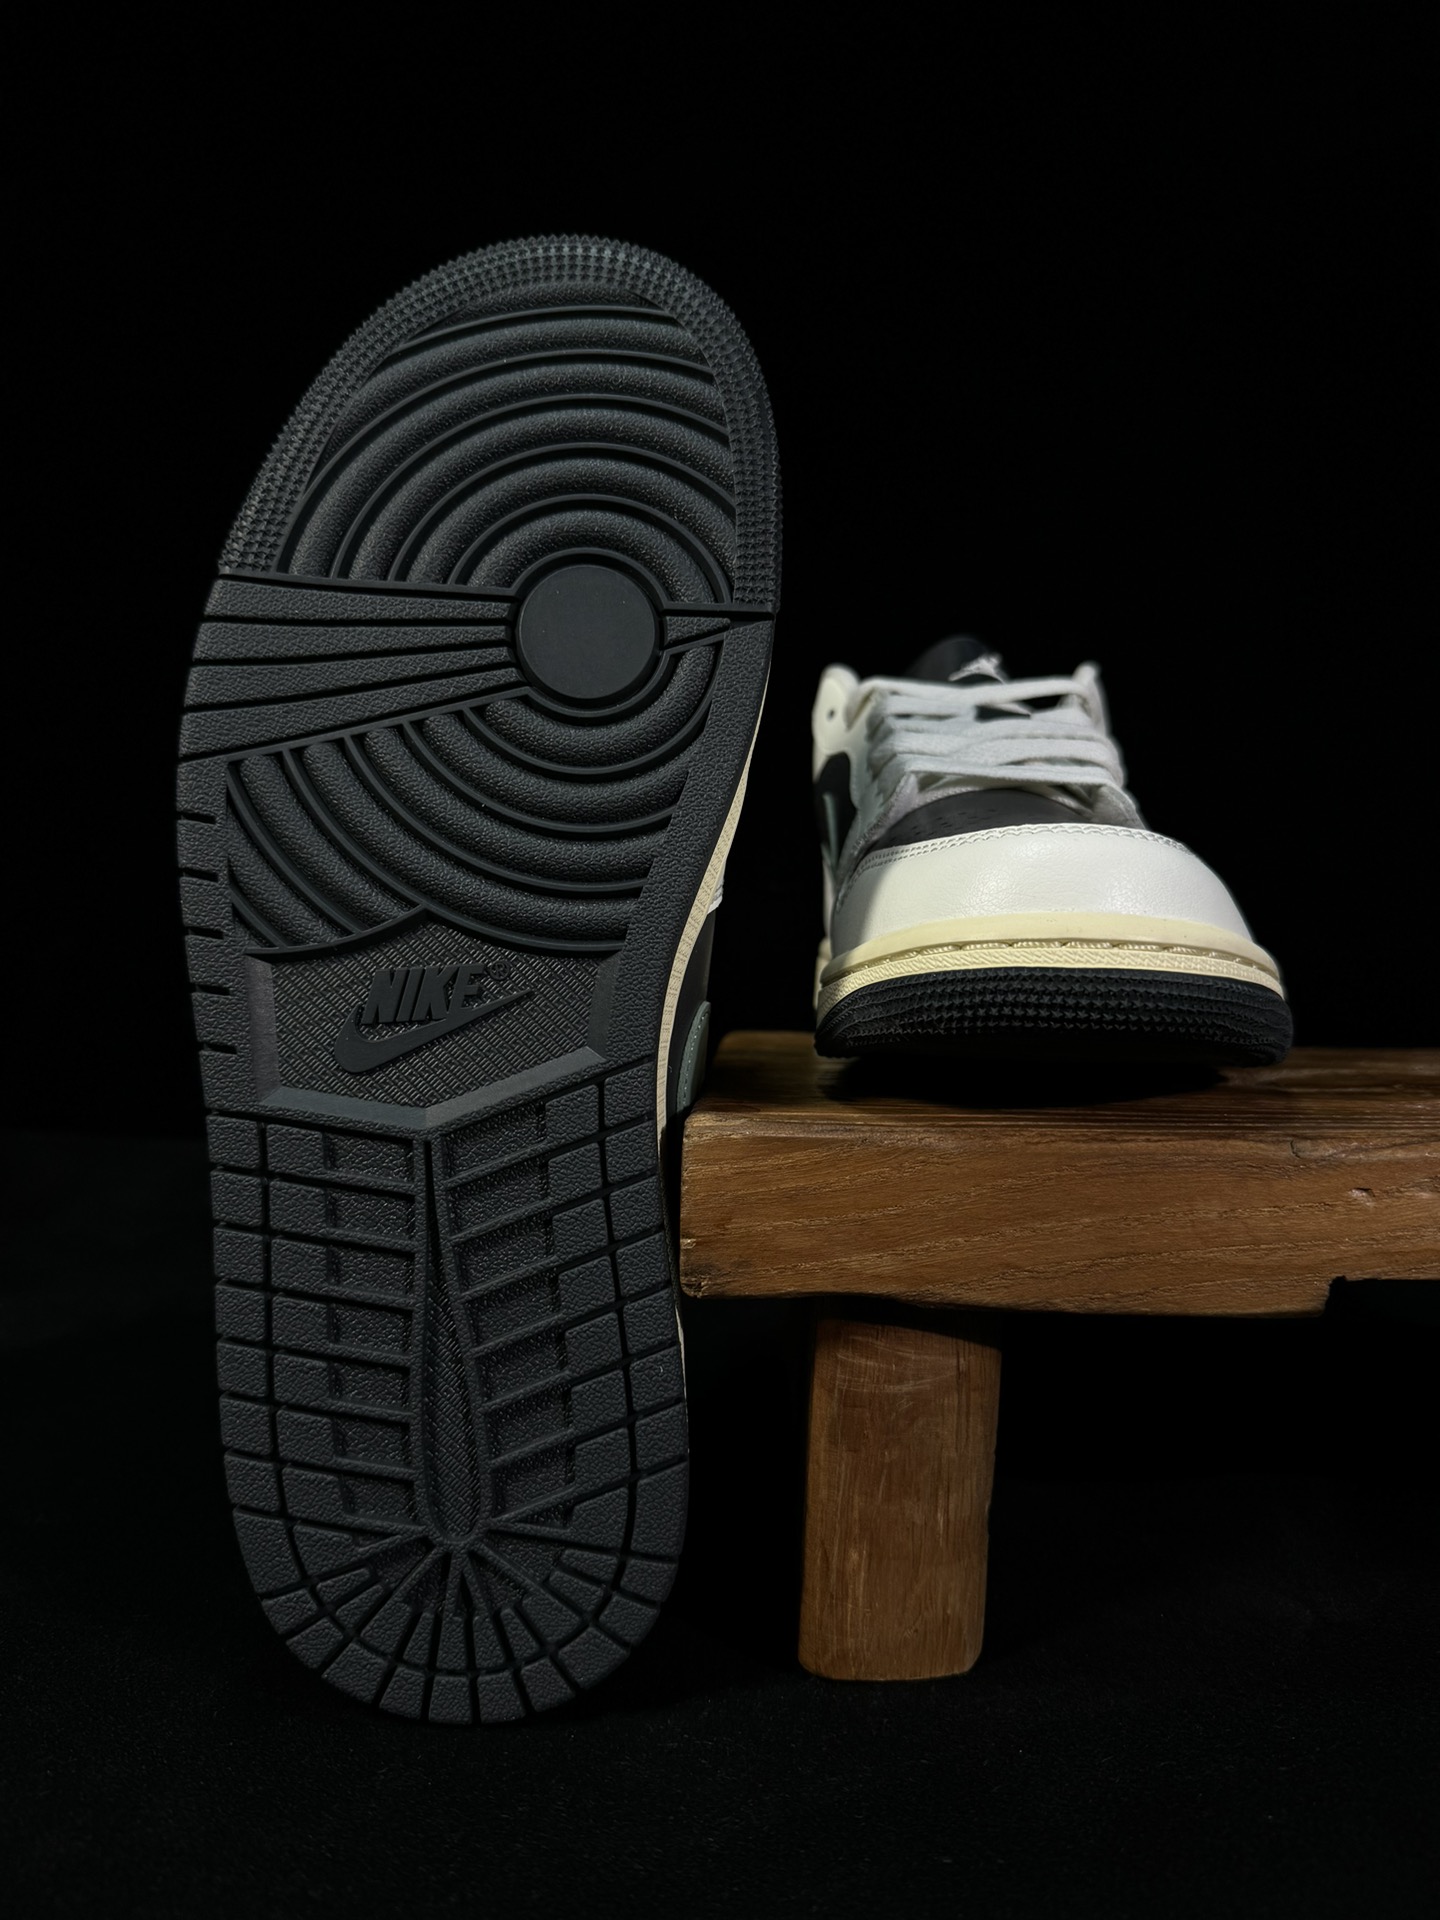 过验版AJ1Low低帮黑绿市售最强低帮天花板品质！市面唯一正确版本全鞋正品原材料货号DC0774-001